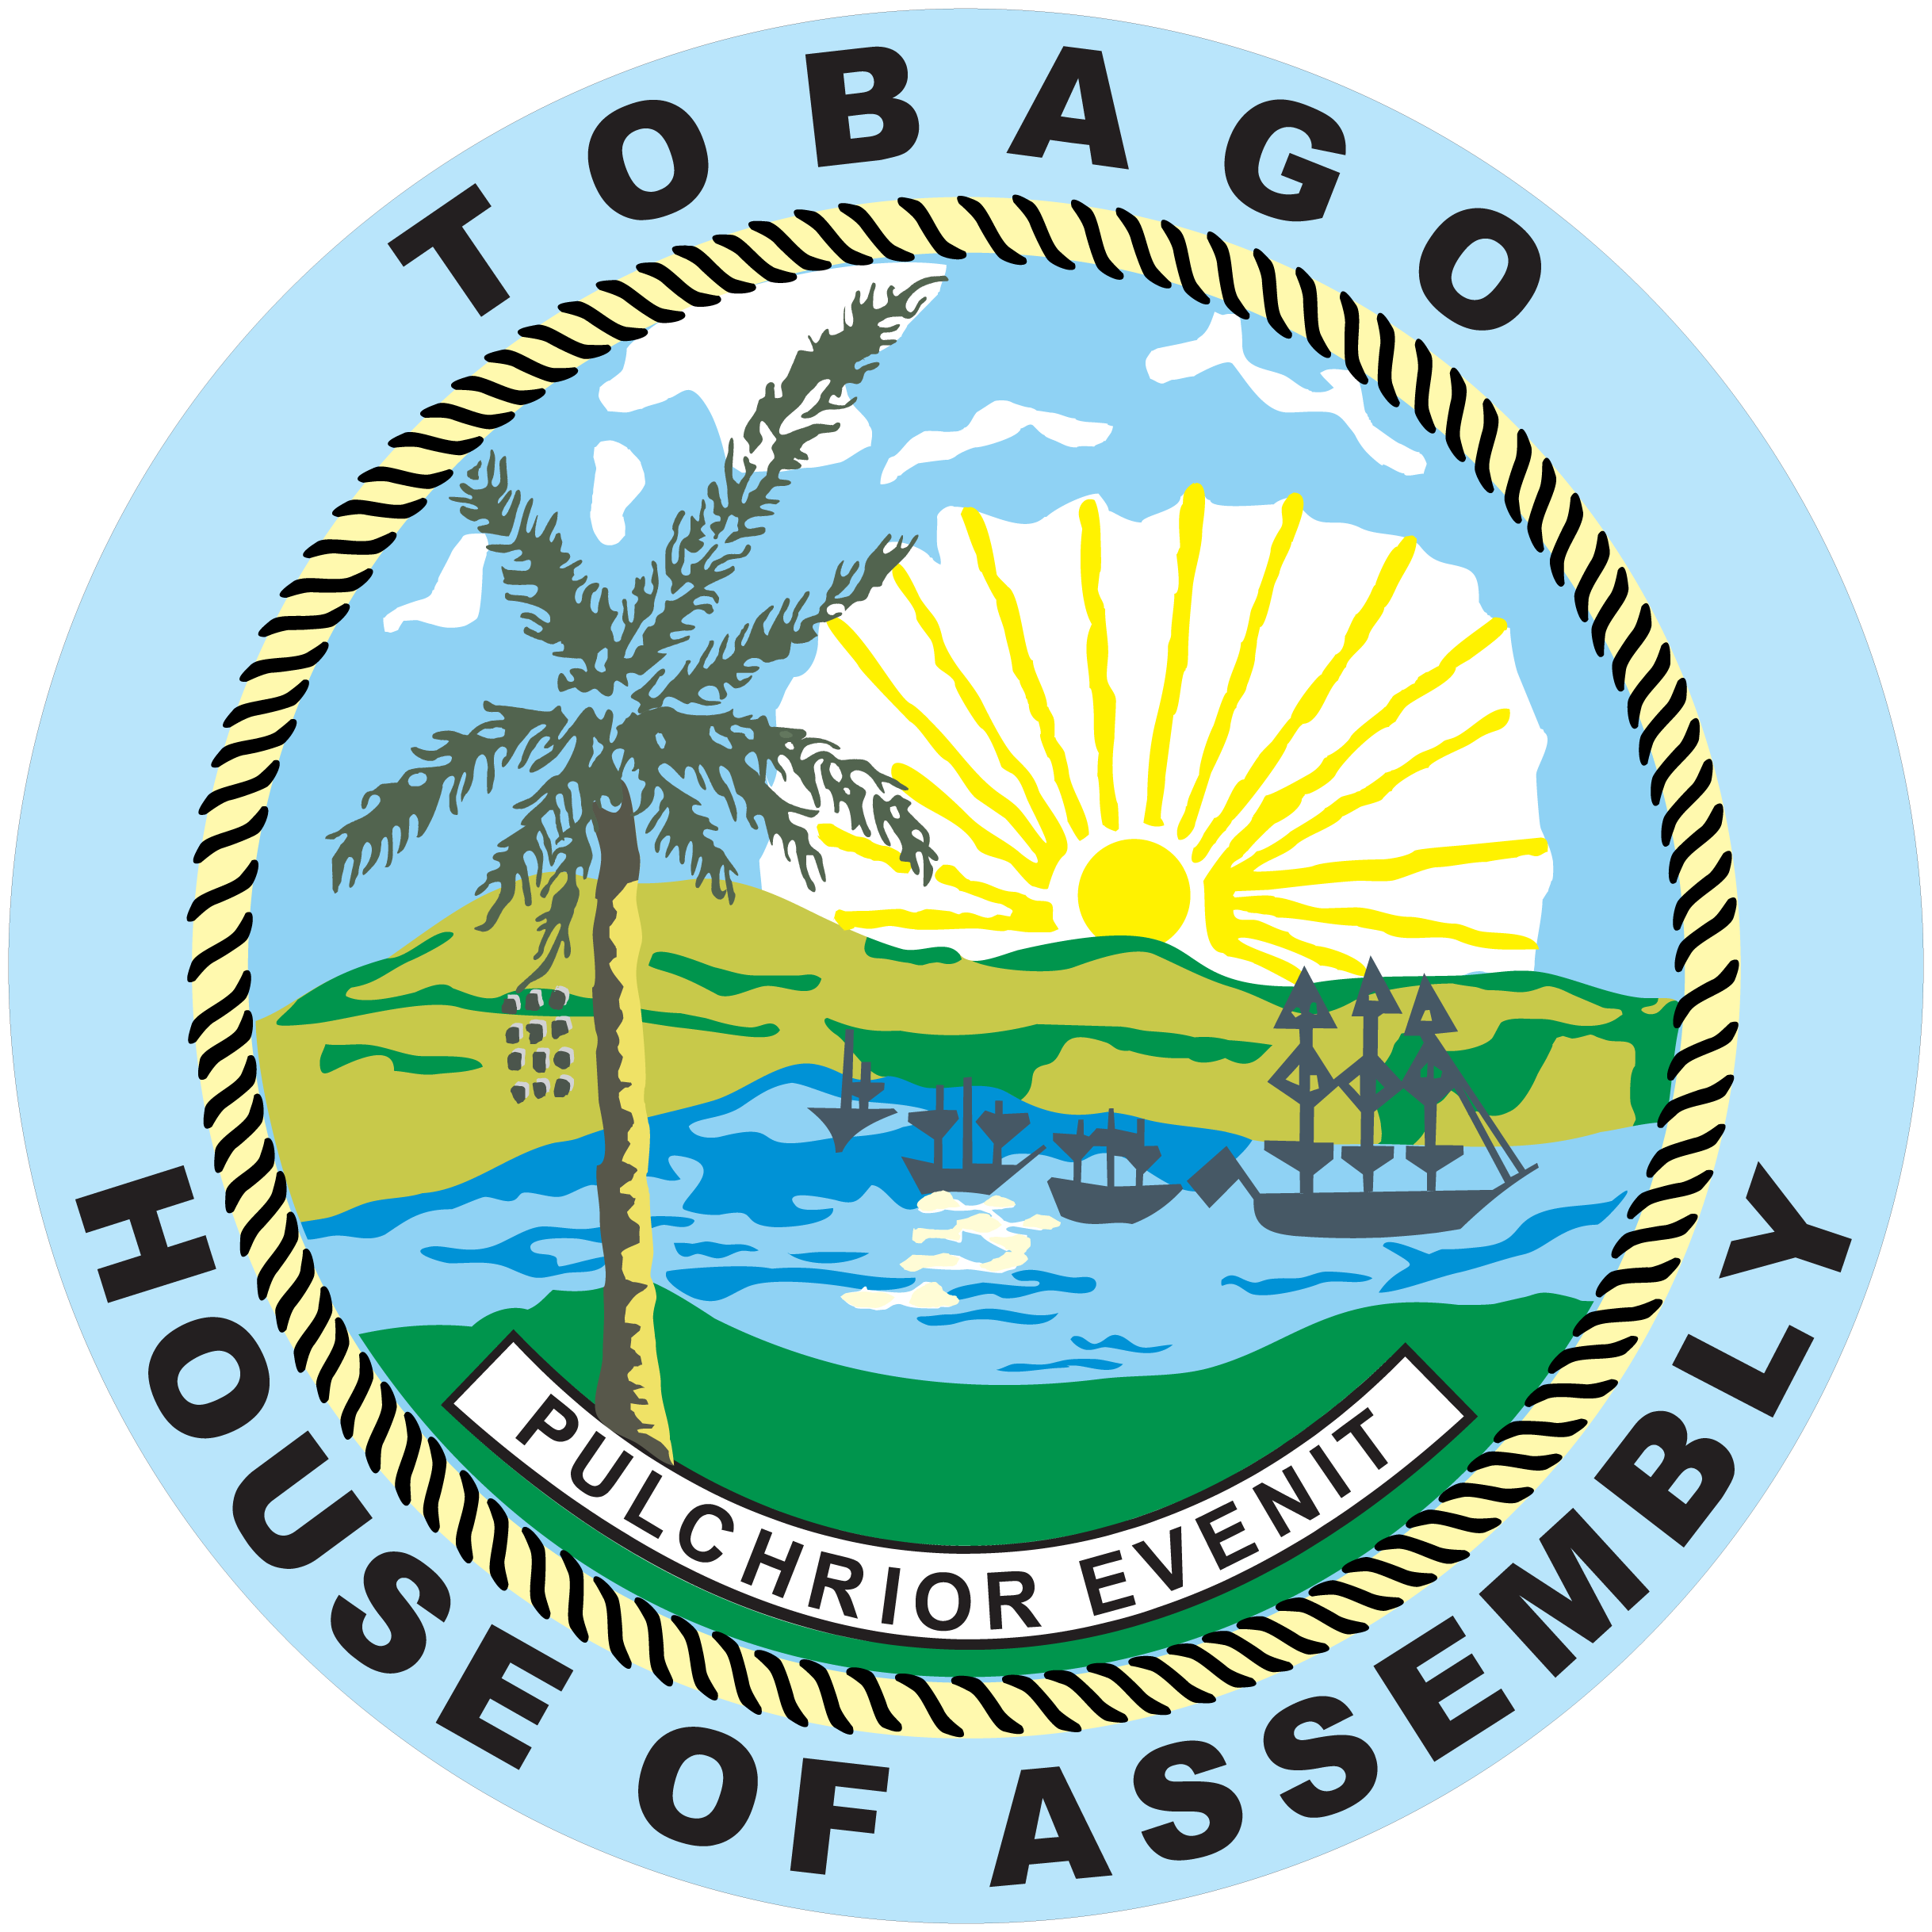 tobago tourism authority